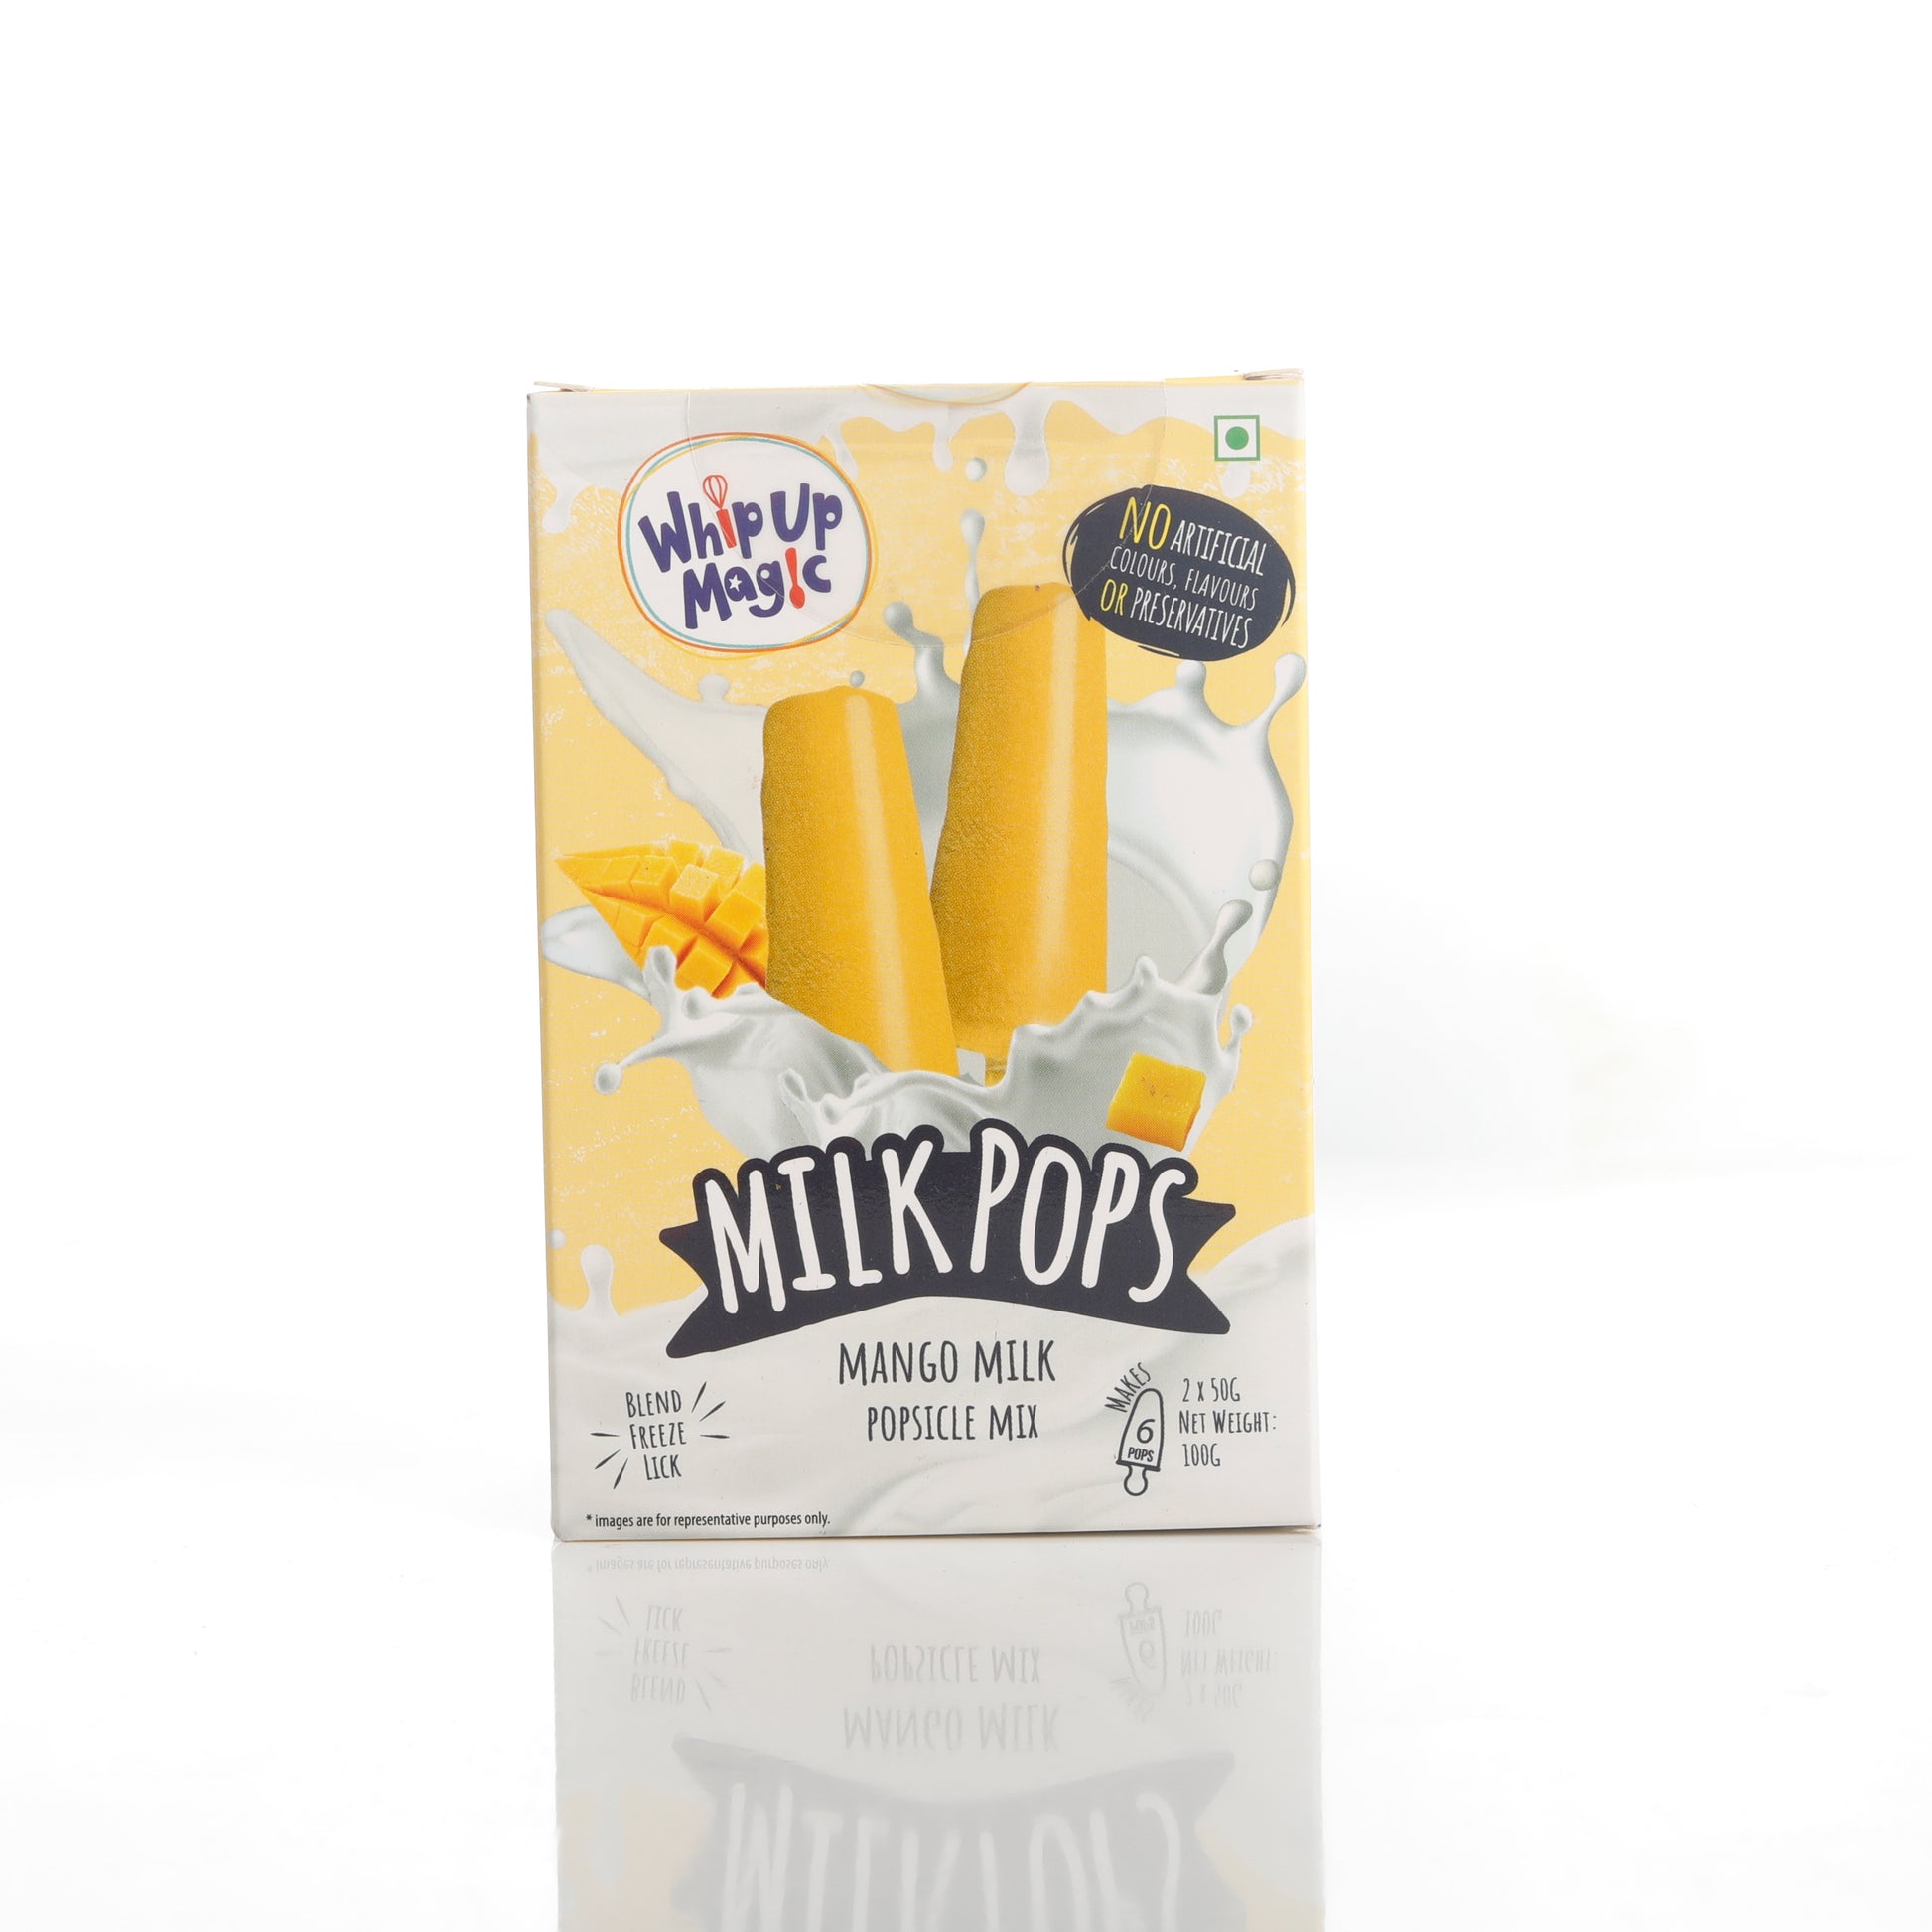 Mango Milk Pops - 50gms whipupmagic